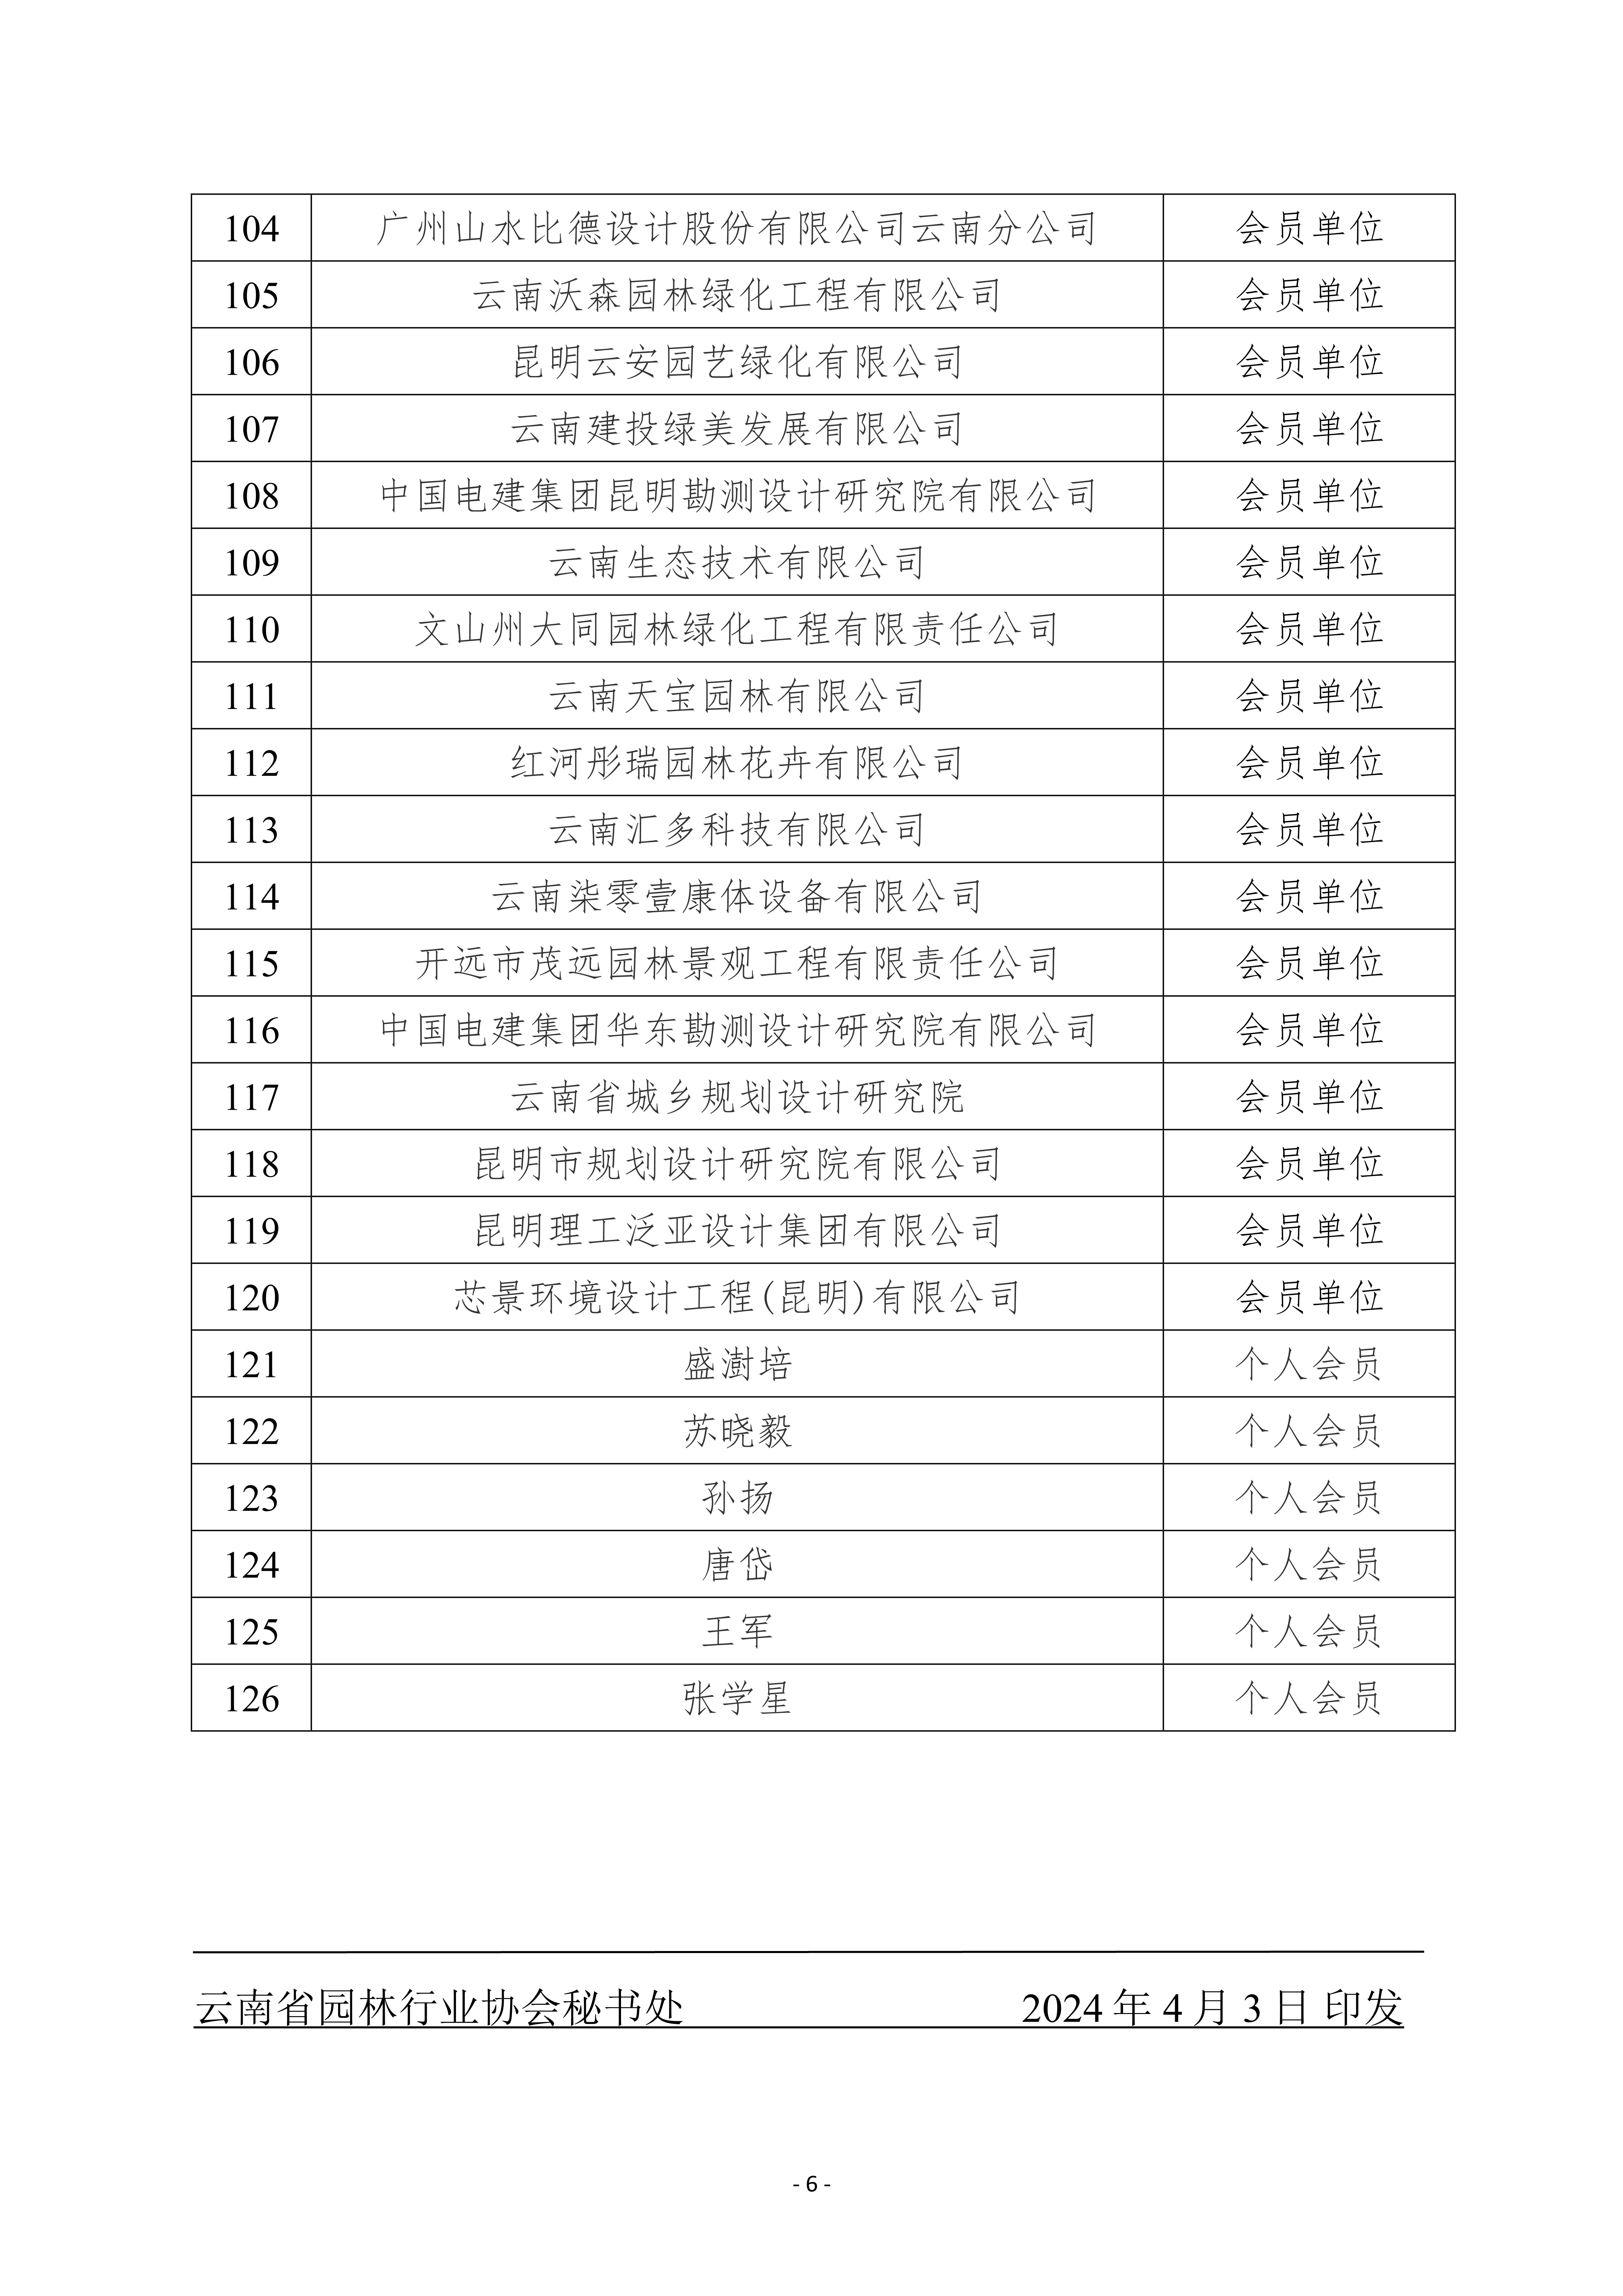 云南省园林行业协会关于第四届会员名册的公示0403_6.jpg